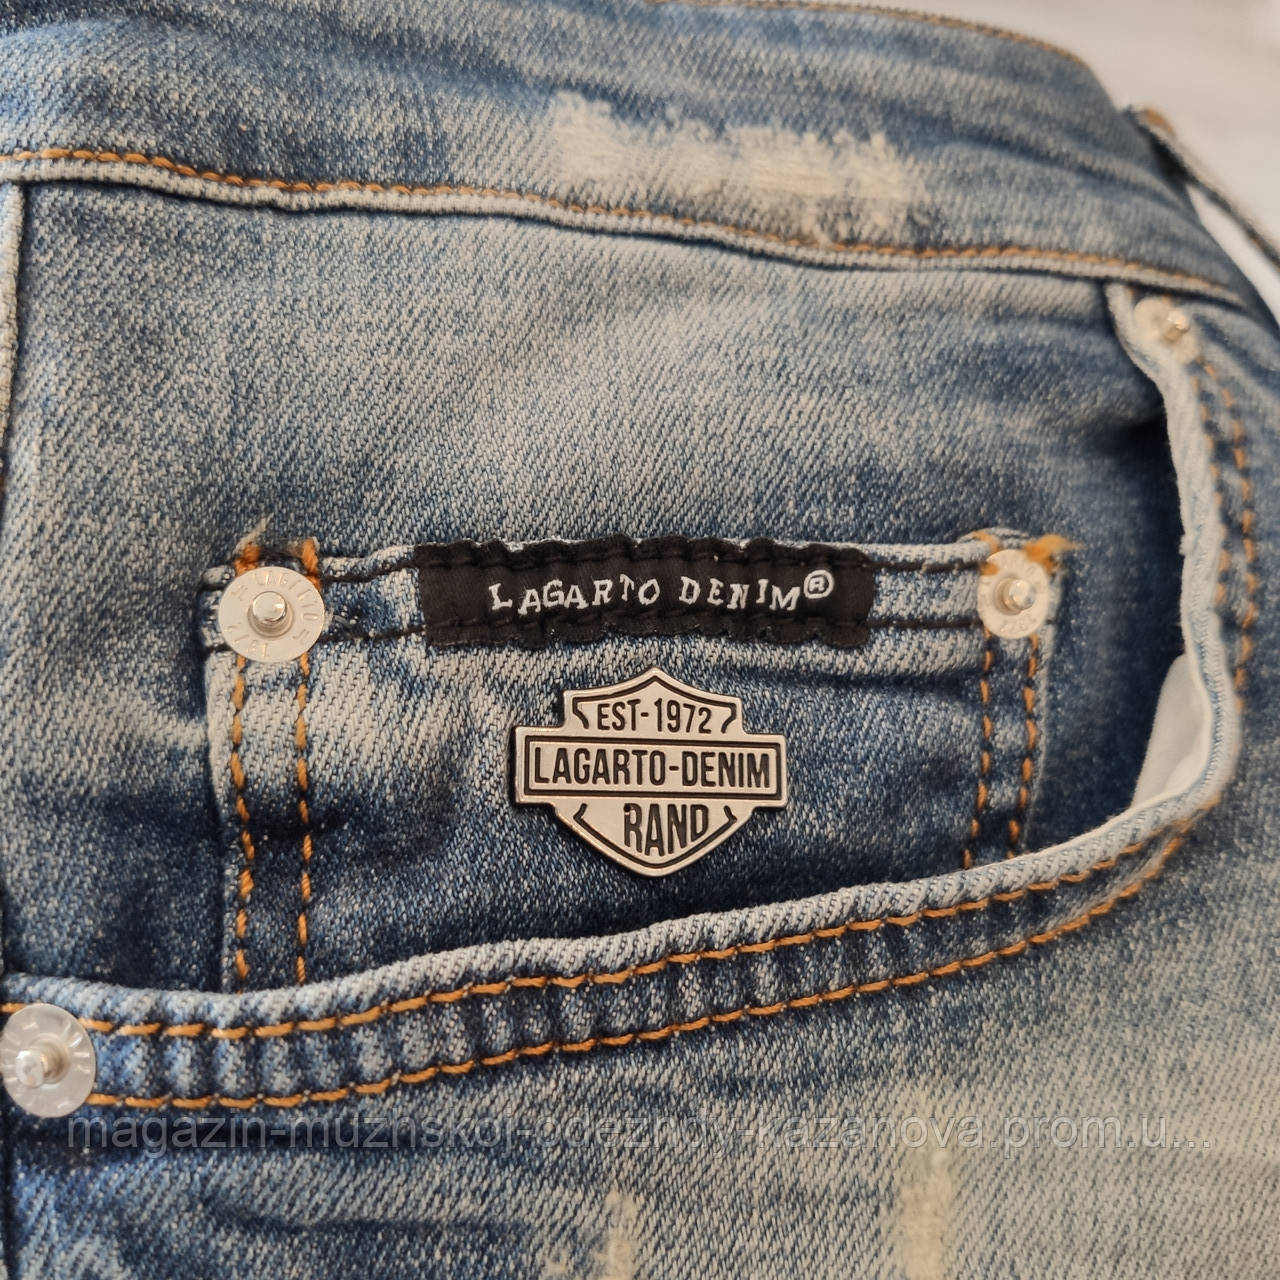 Мужские джинсовые шорты "Lagarto Denim" 307 батал, цена 1199 грн - Prom.ua  (ID#1175308580)